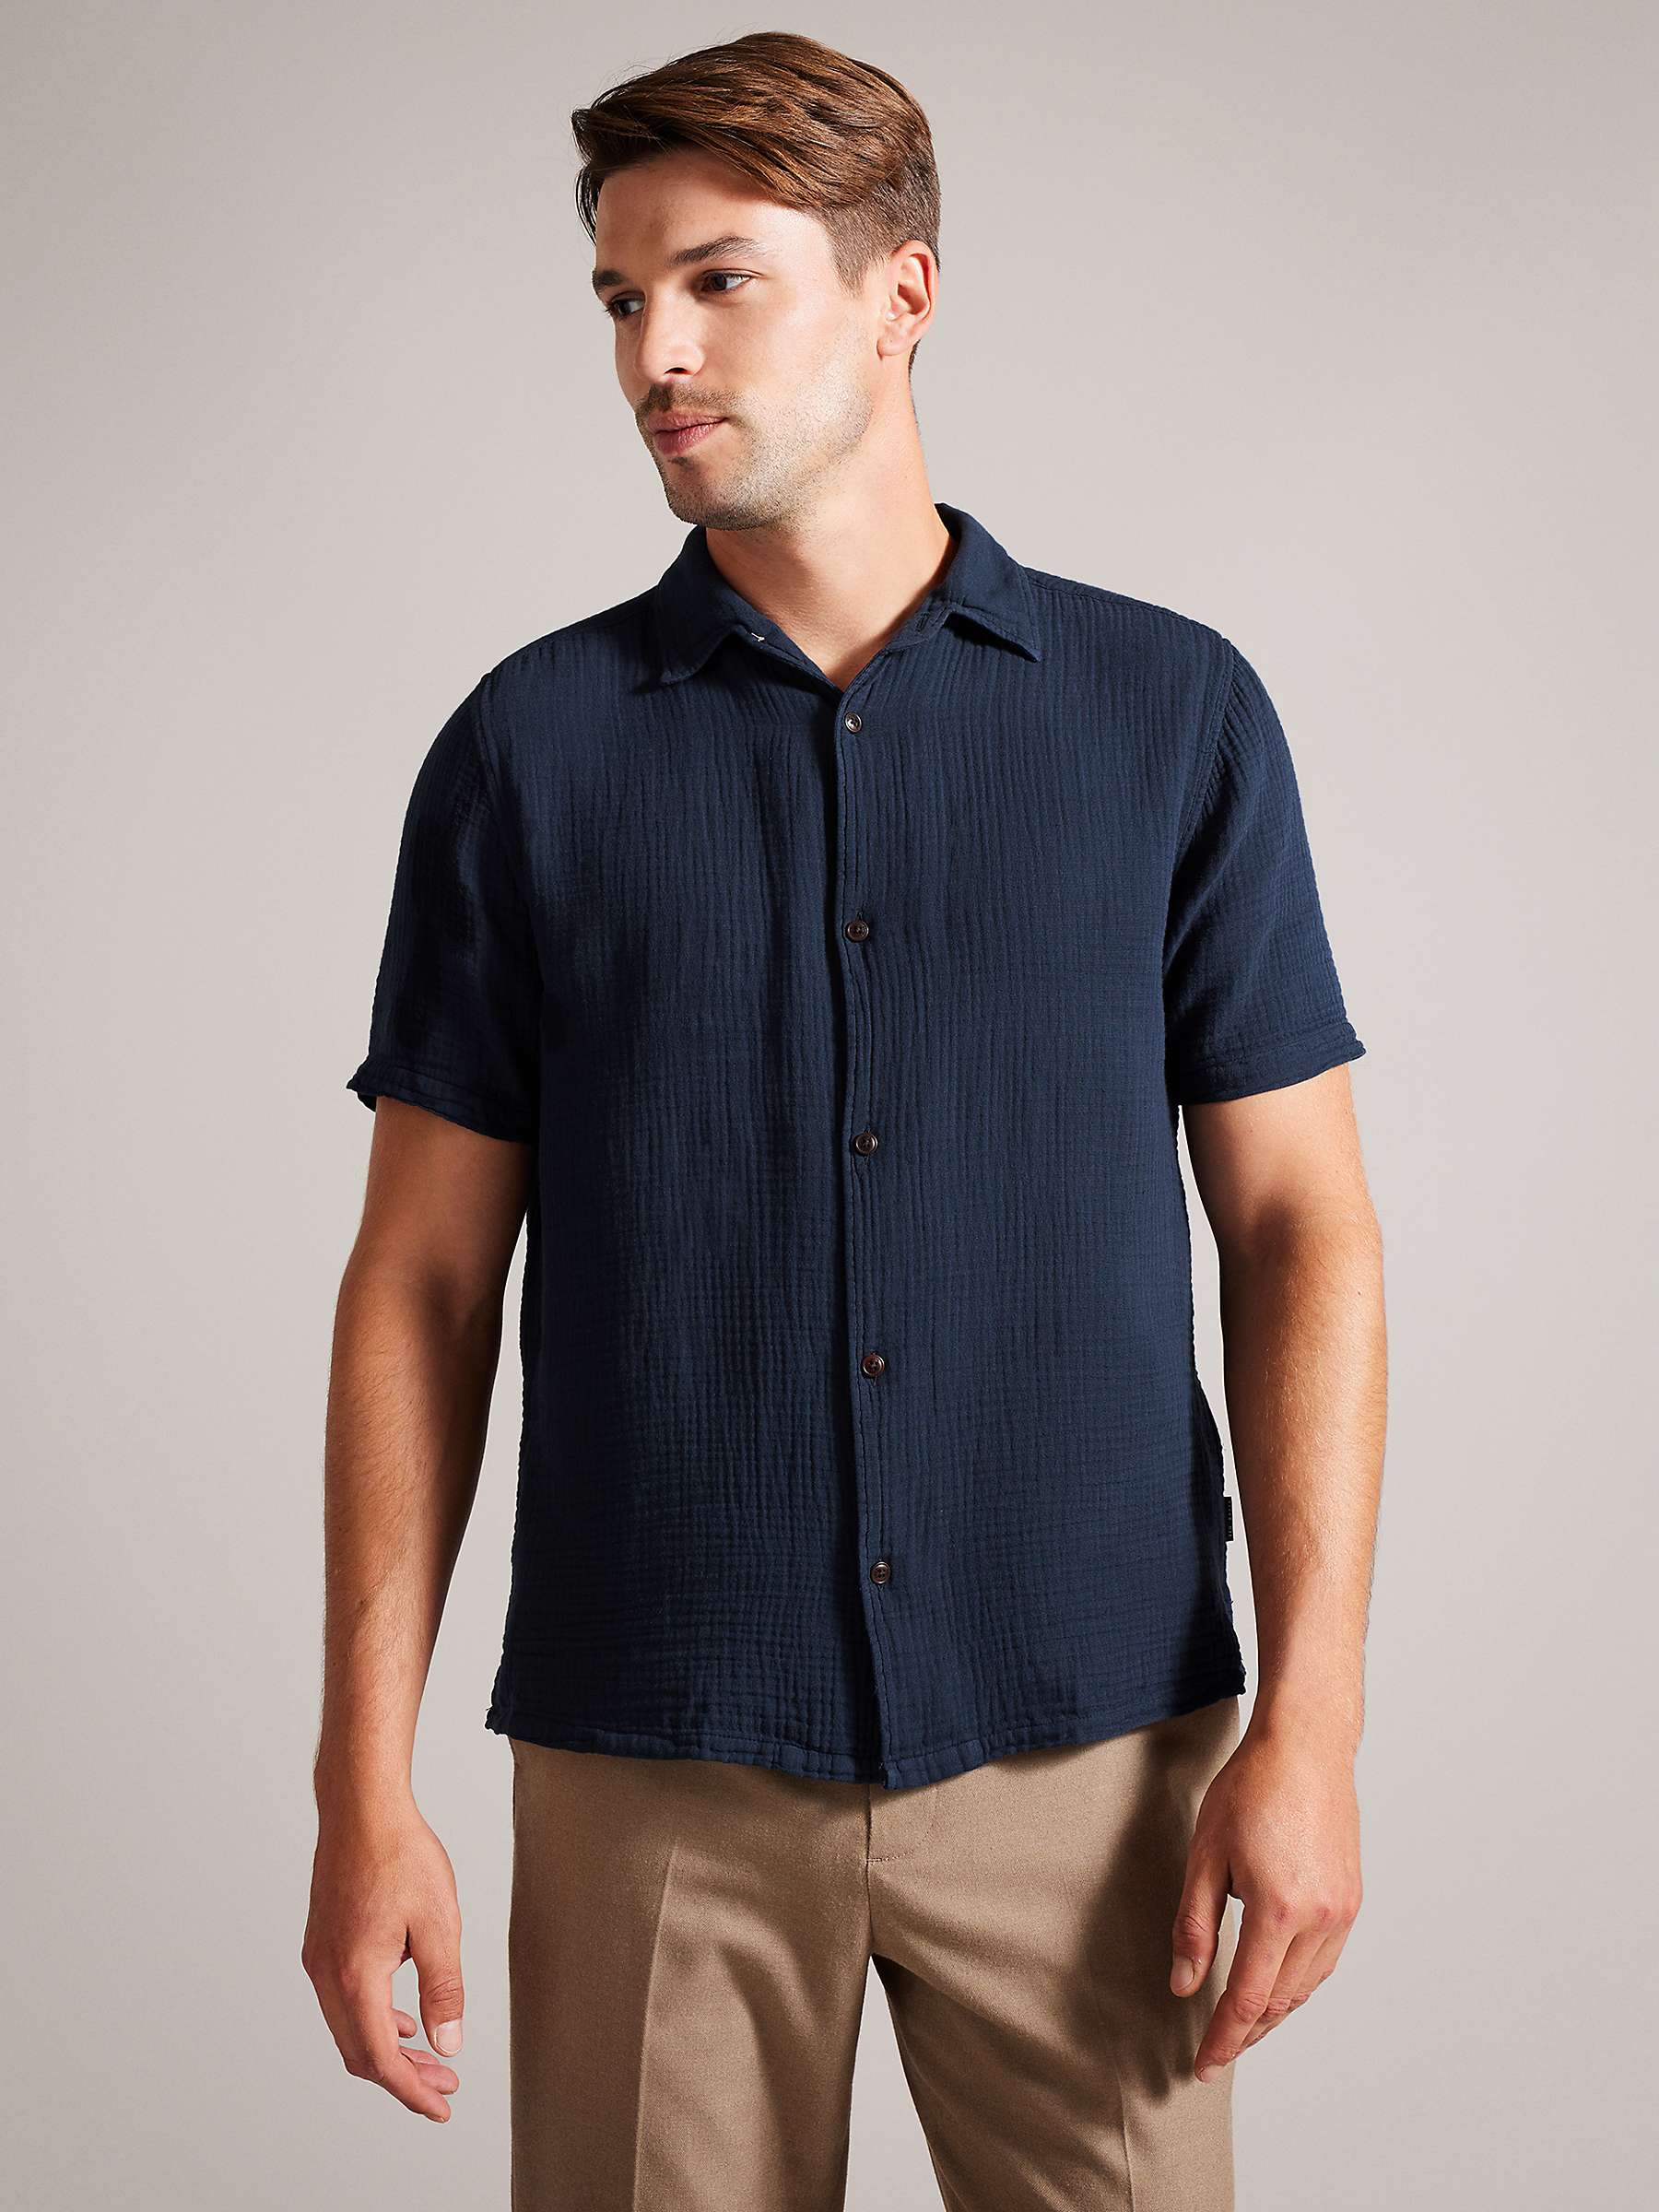 Ted Baker Digmer Textured Lightweight Cotton Shirt, Navy at John Lewis ...